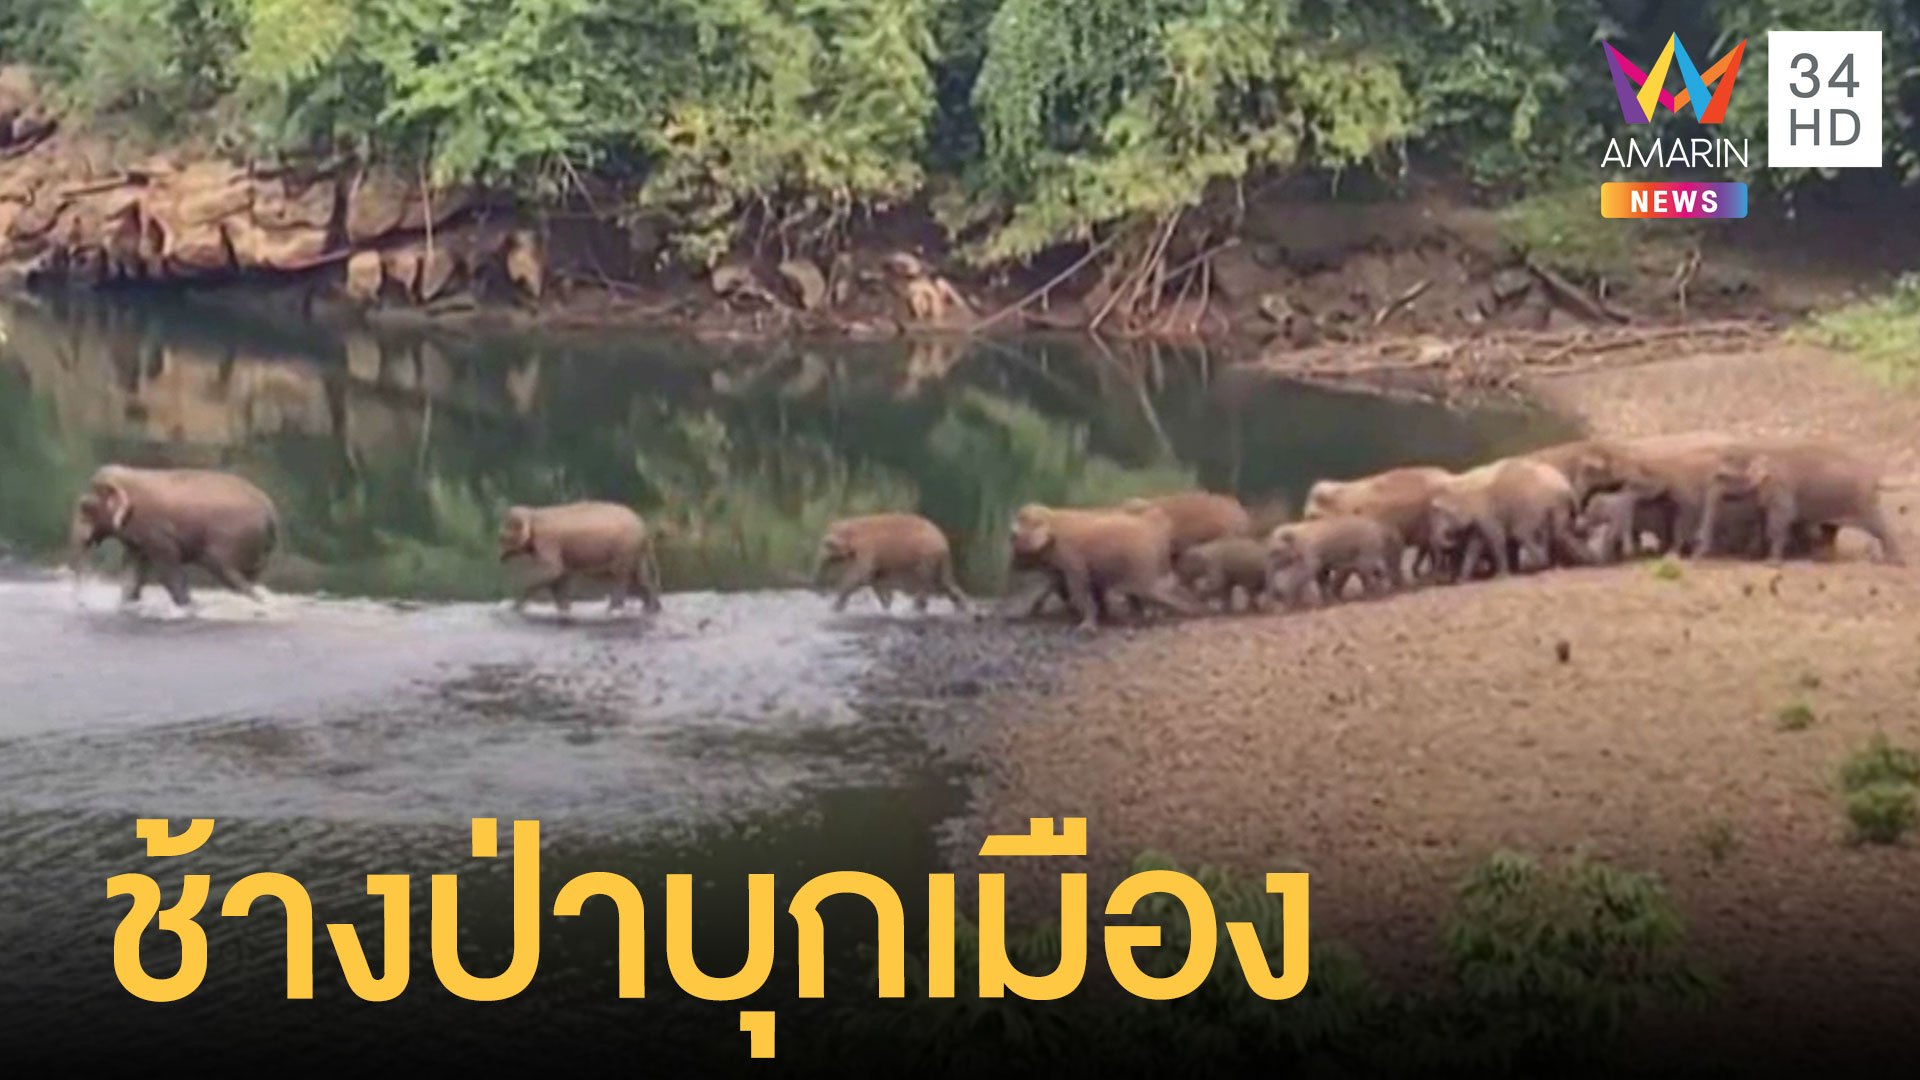 ผลักดันโขลงช้างป่า 20 ตัวกลับถิ่น หลังข้ามแม่น้ำมาหากิน | ข่าวเที่ยงอมรินทร์ | 4 ธ.ค. 63 | AMARIN TVHD34